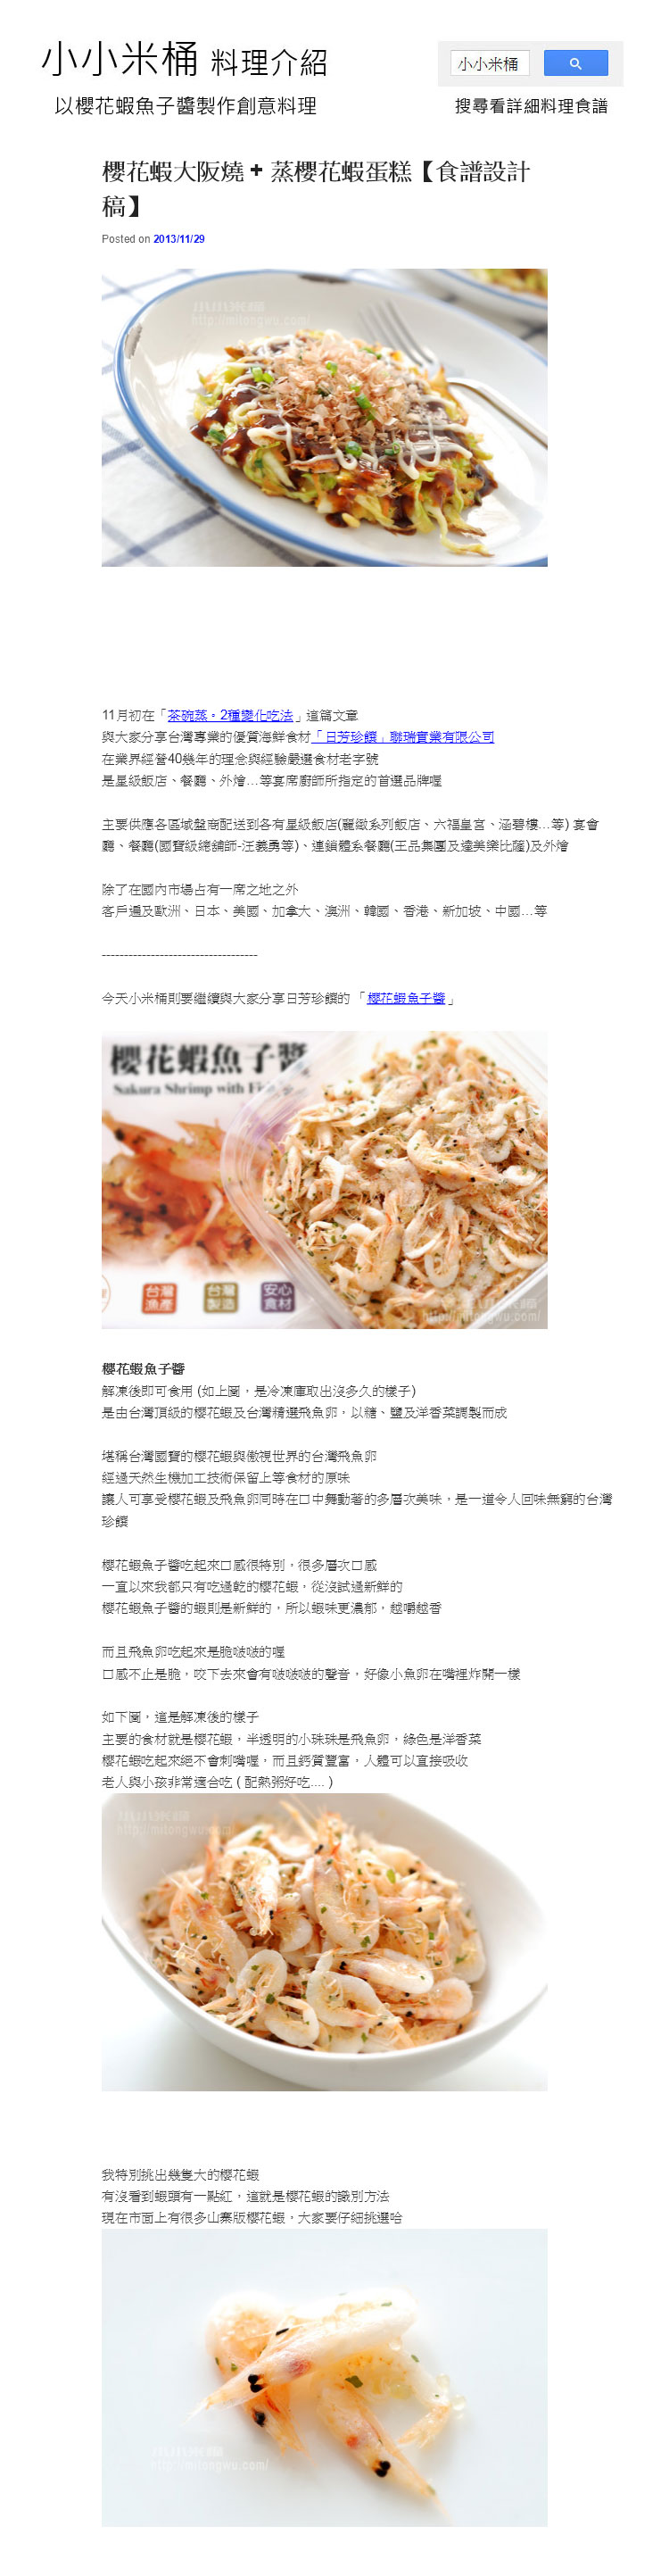 小小米桶介紹櫻花蝦魚子醬創意料理